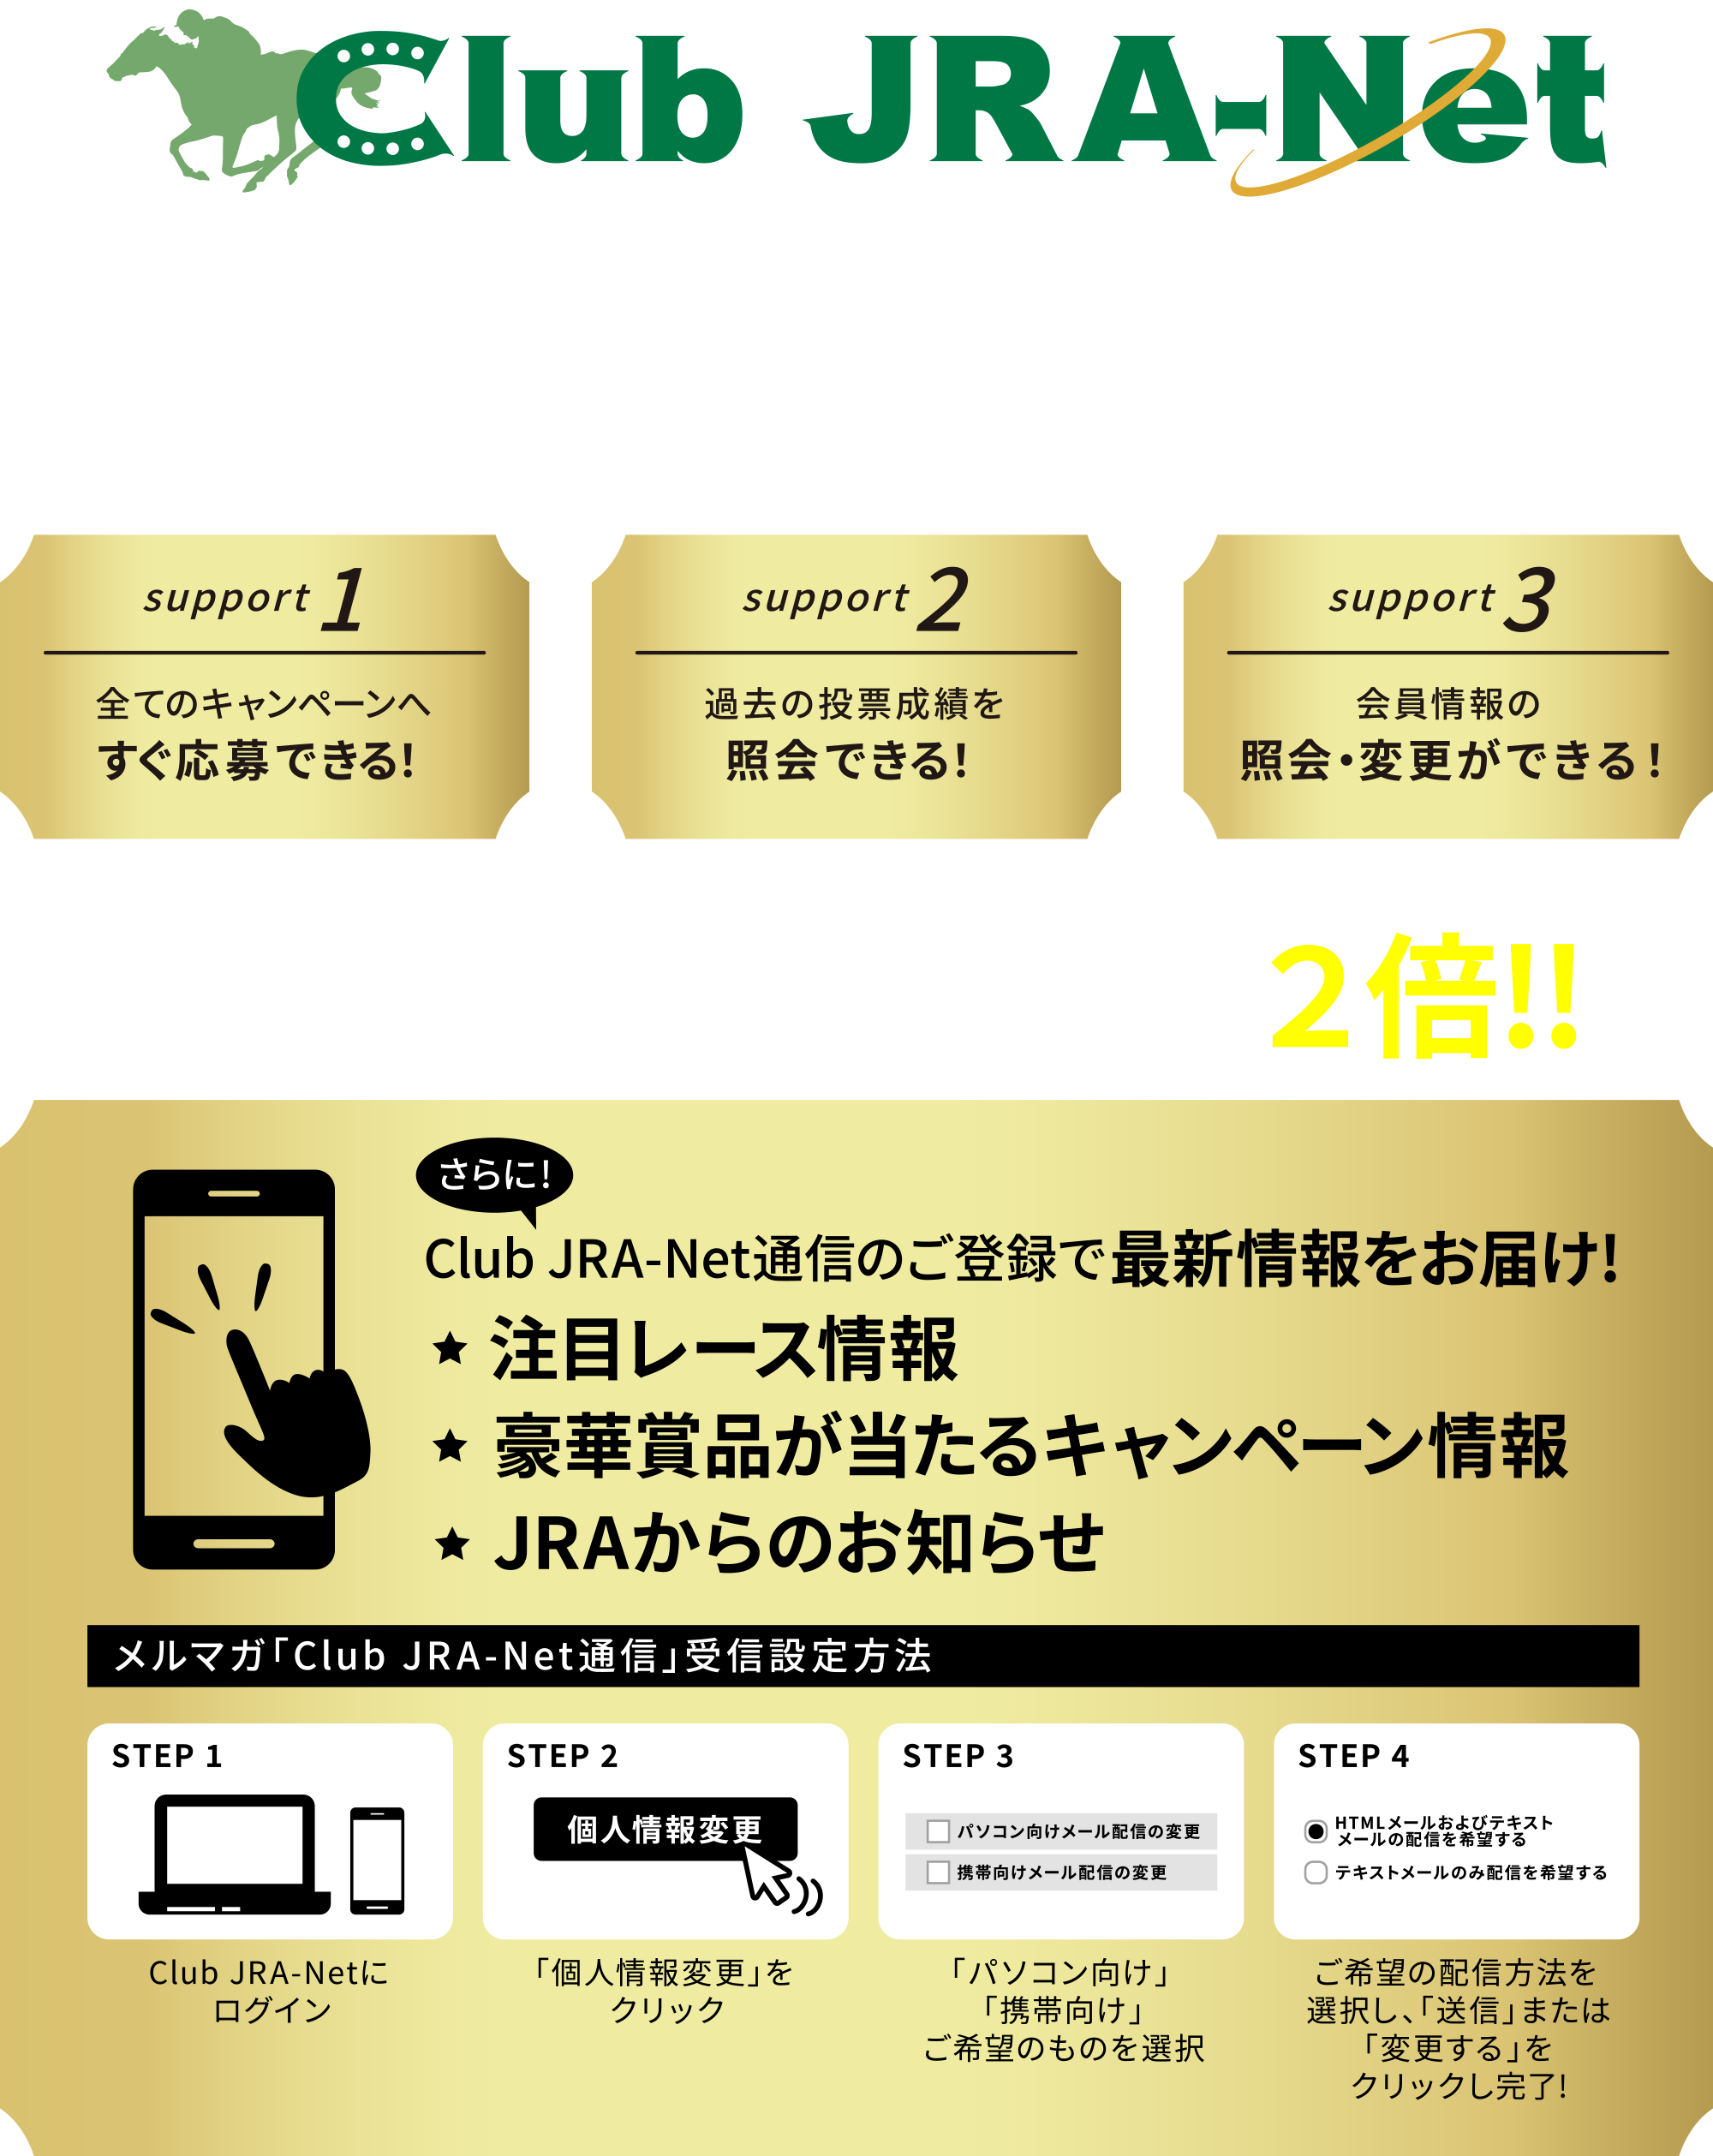 JRA 電話・インターネット投票会員をサポートします！登録・利用 無料！！